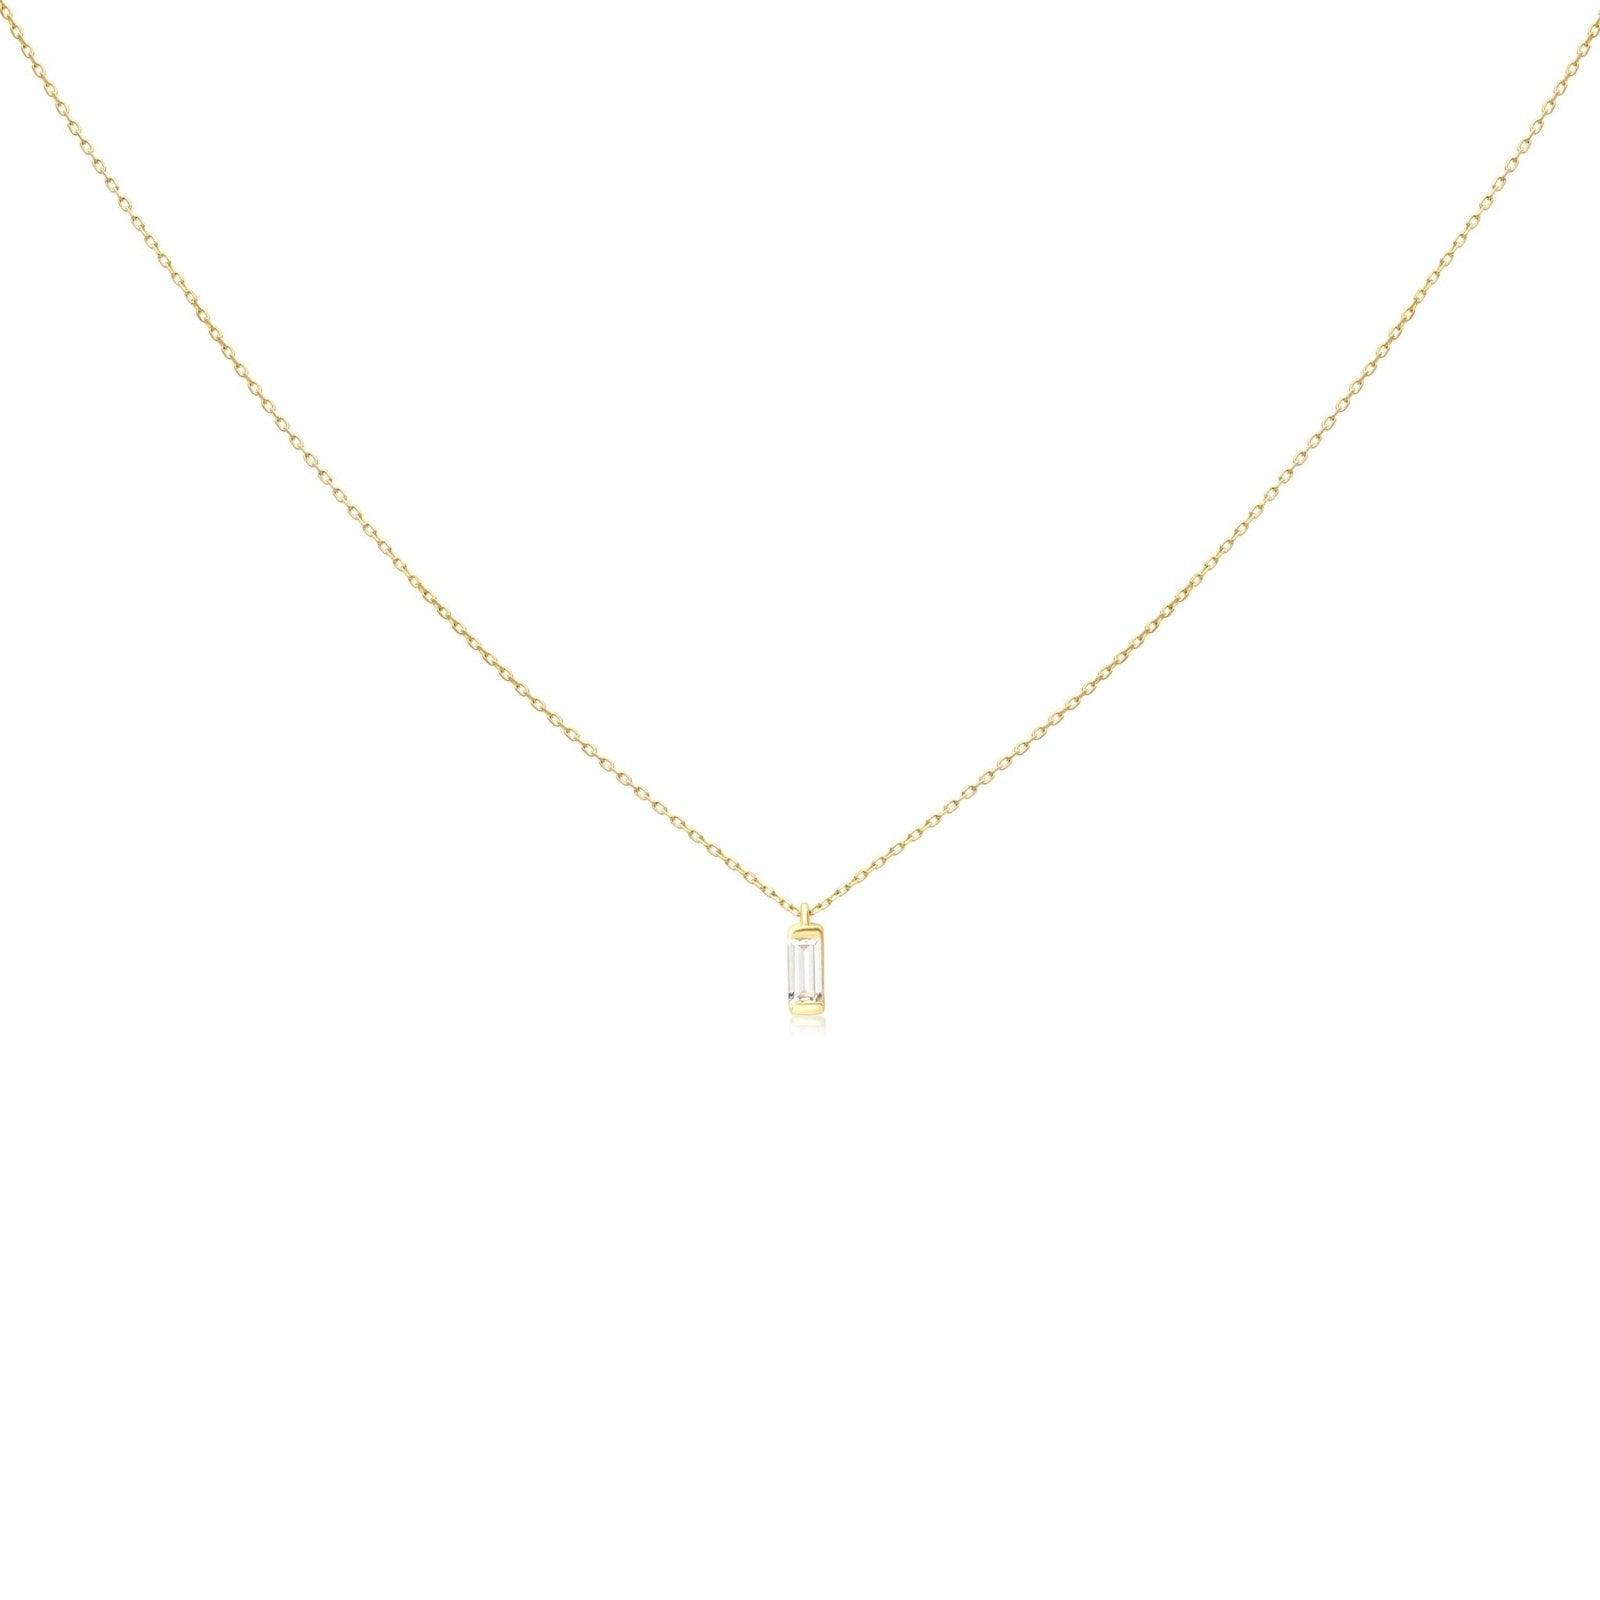 Clear Baguette Pendant Necklace Necklaces Estella Collection #product_description# 14k Colorless Gemstone Cubic Zirconia #tag4# #tag5# #tag6# #tag7# #tag8# #tag9# #tag10#